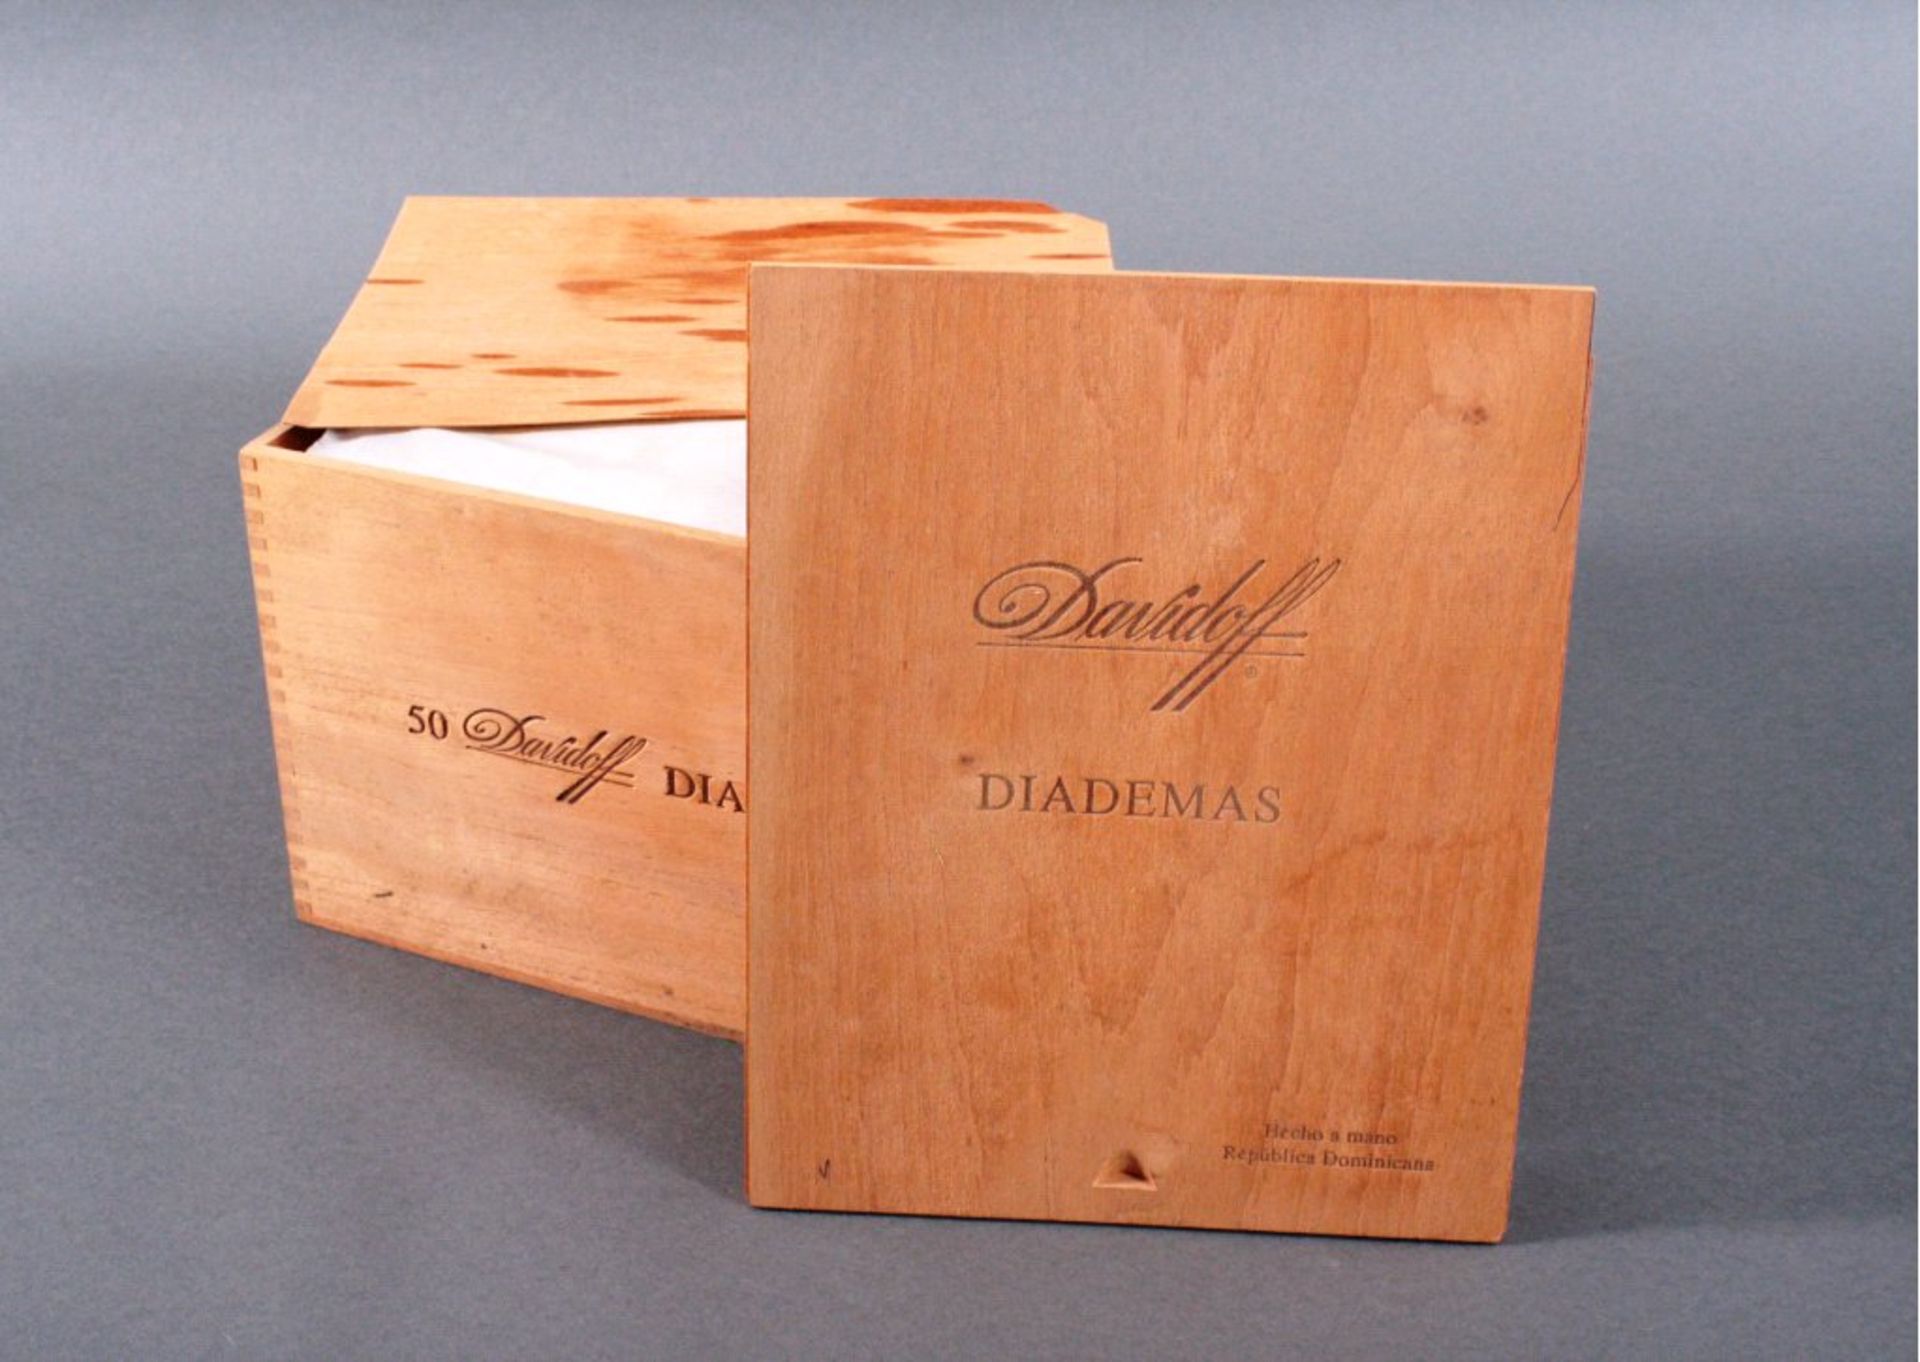 50x Davidoff DiademasLänge ca 22,5, Durchmesser 2,1 cm, in original Zigarrenkiste